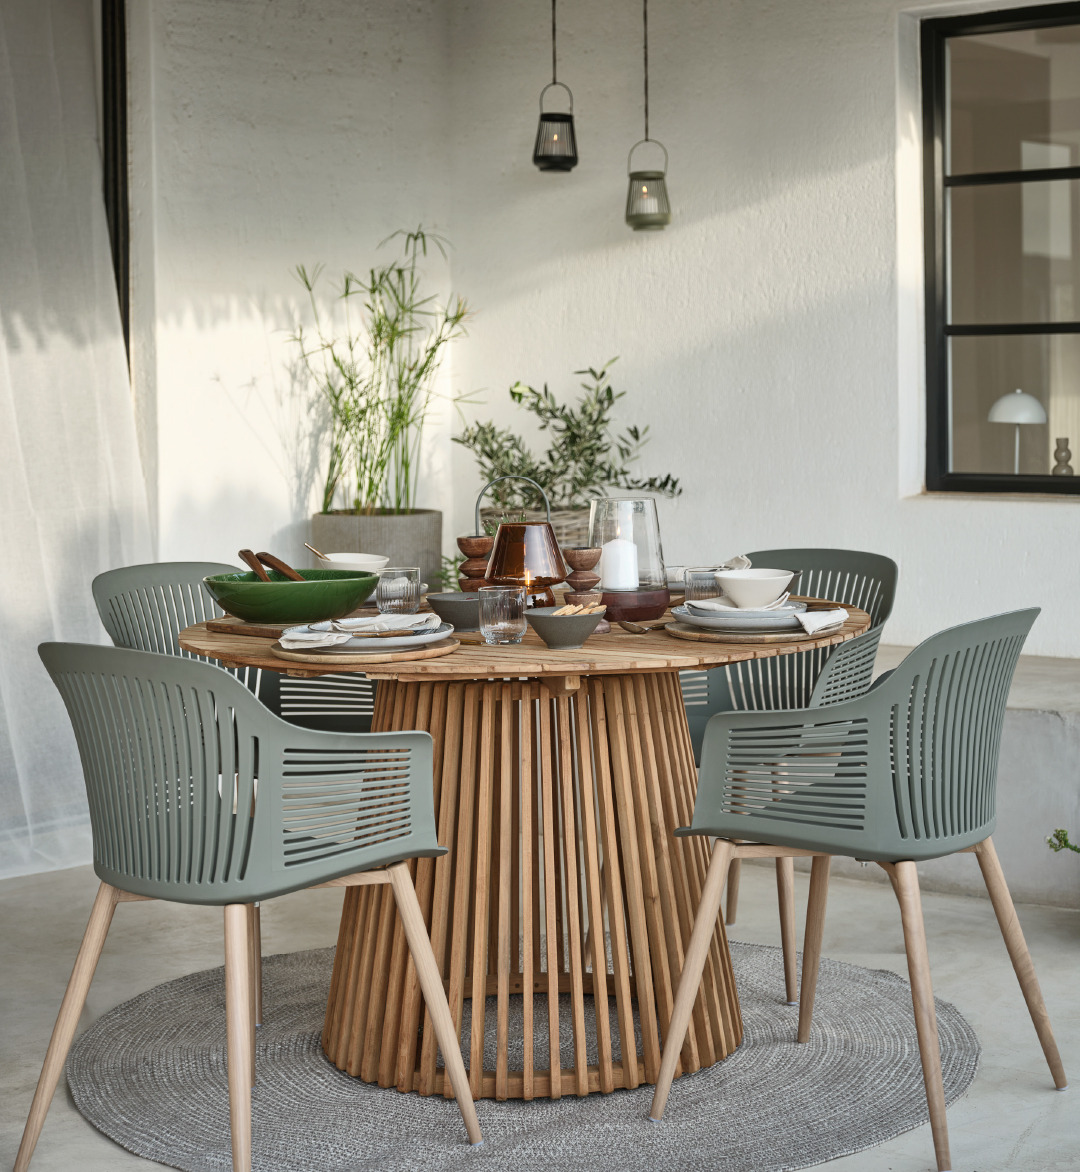 Terrasse avec table en bois et chaises vert olive avec pieds en bois dans un style moderne